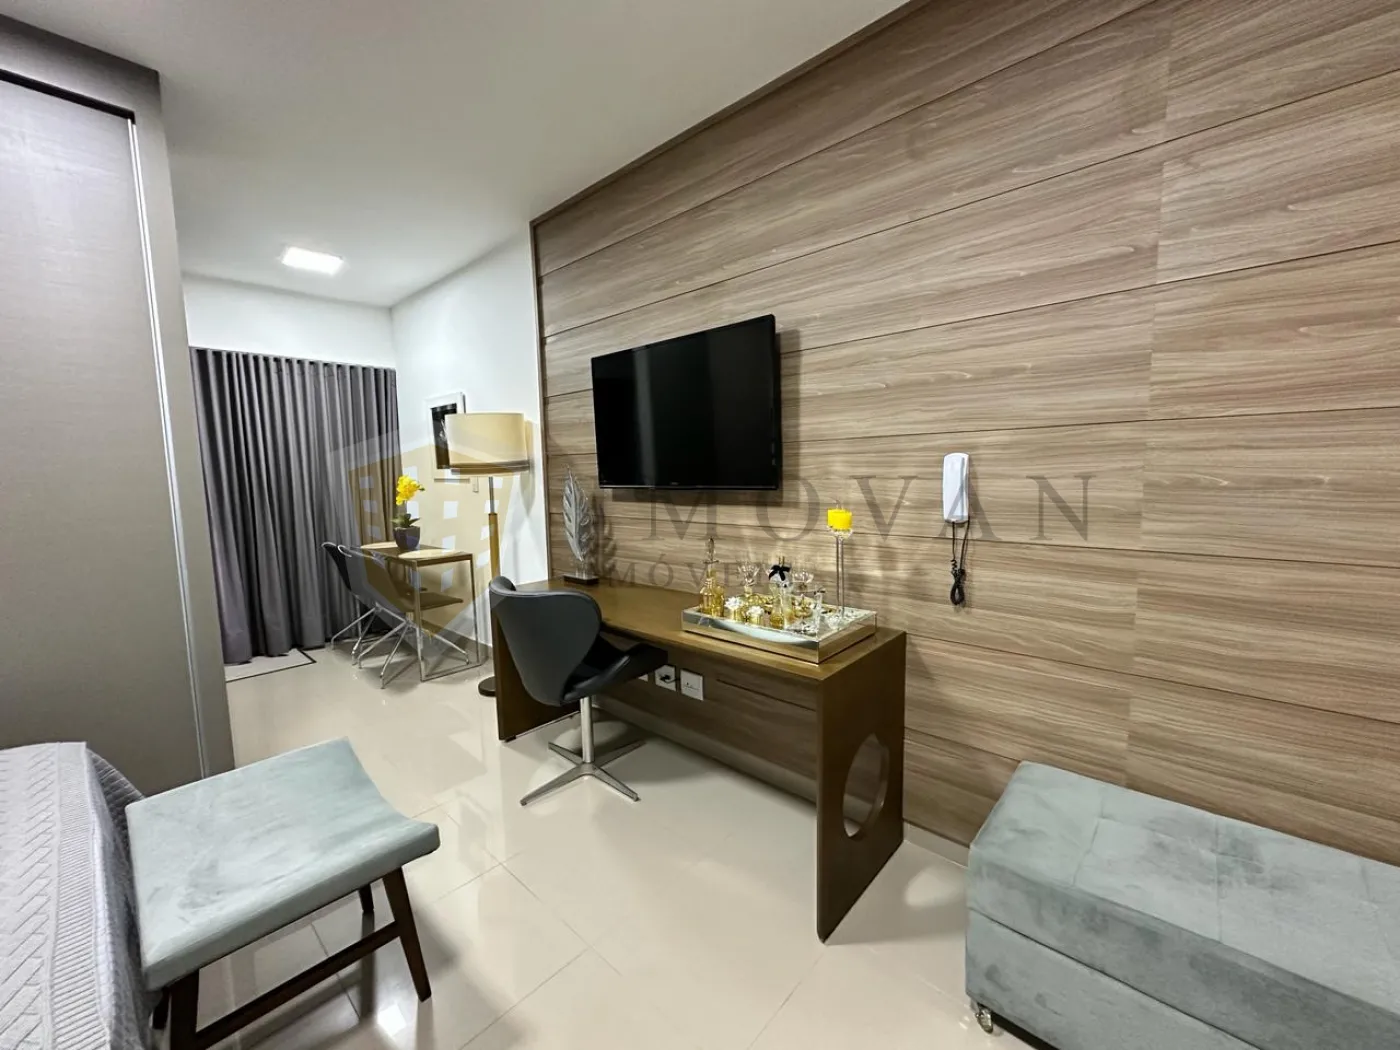 Comprar Apartamento / Kitchnet em Ribeirão Preto R$ 350.000,00 - Foto 6